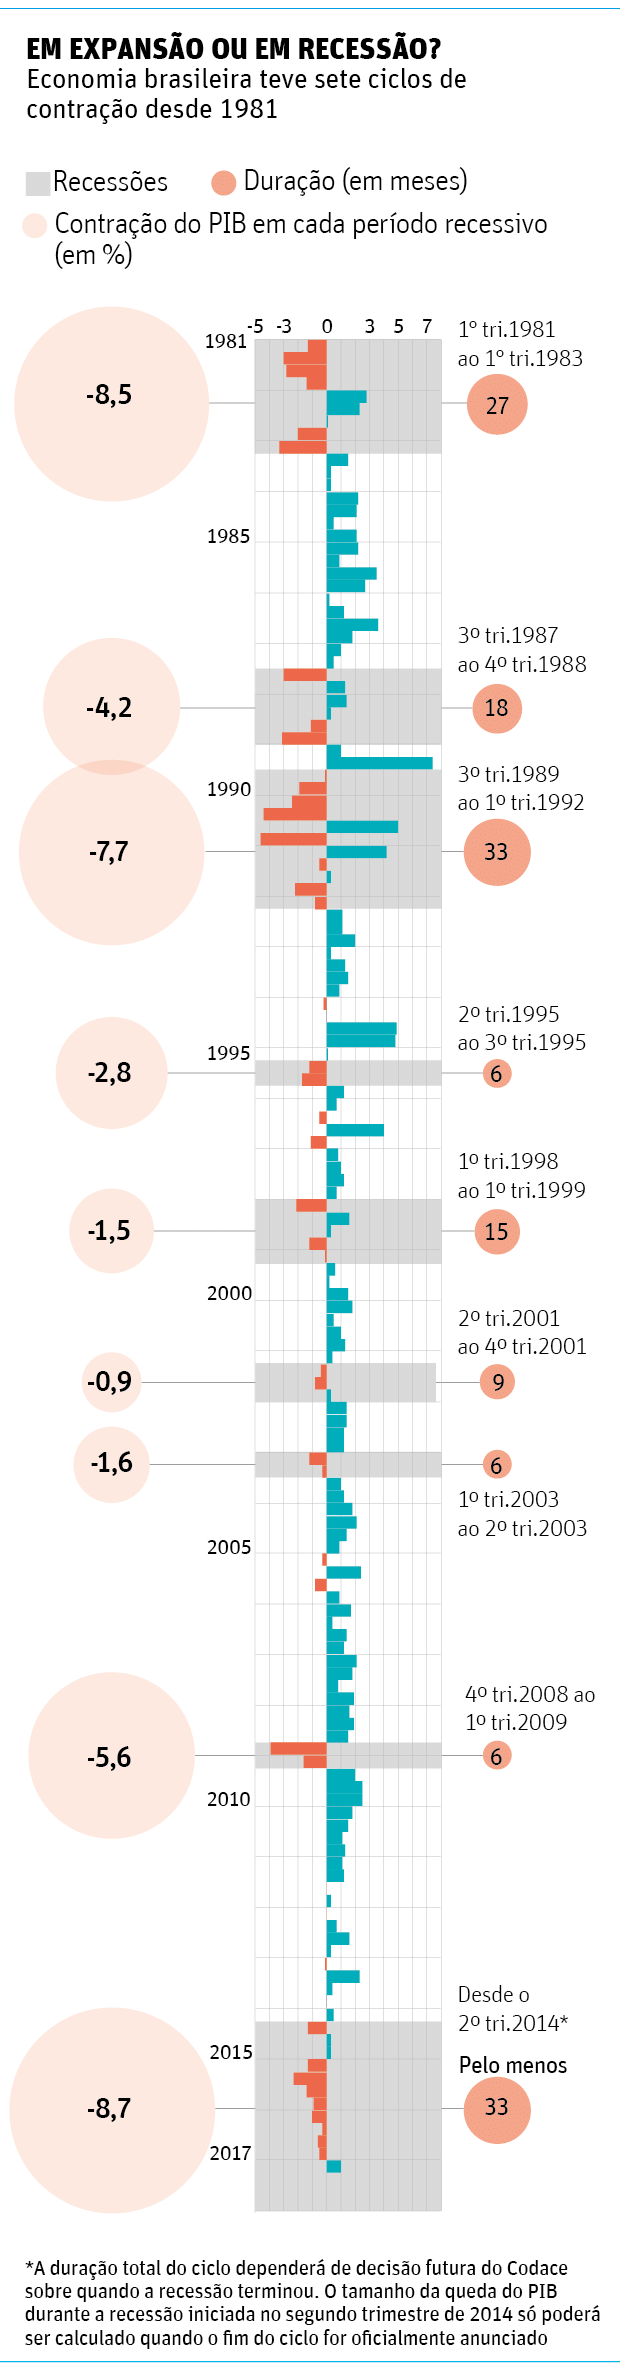 EM EXPANSO OU EM RECESSO? Economia brasileira teve sete ciclos de contrao desde 1981